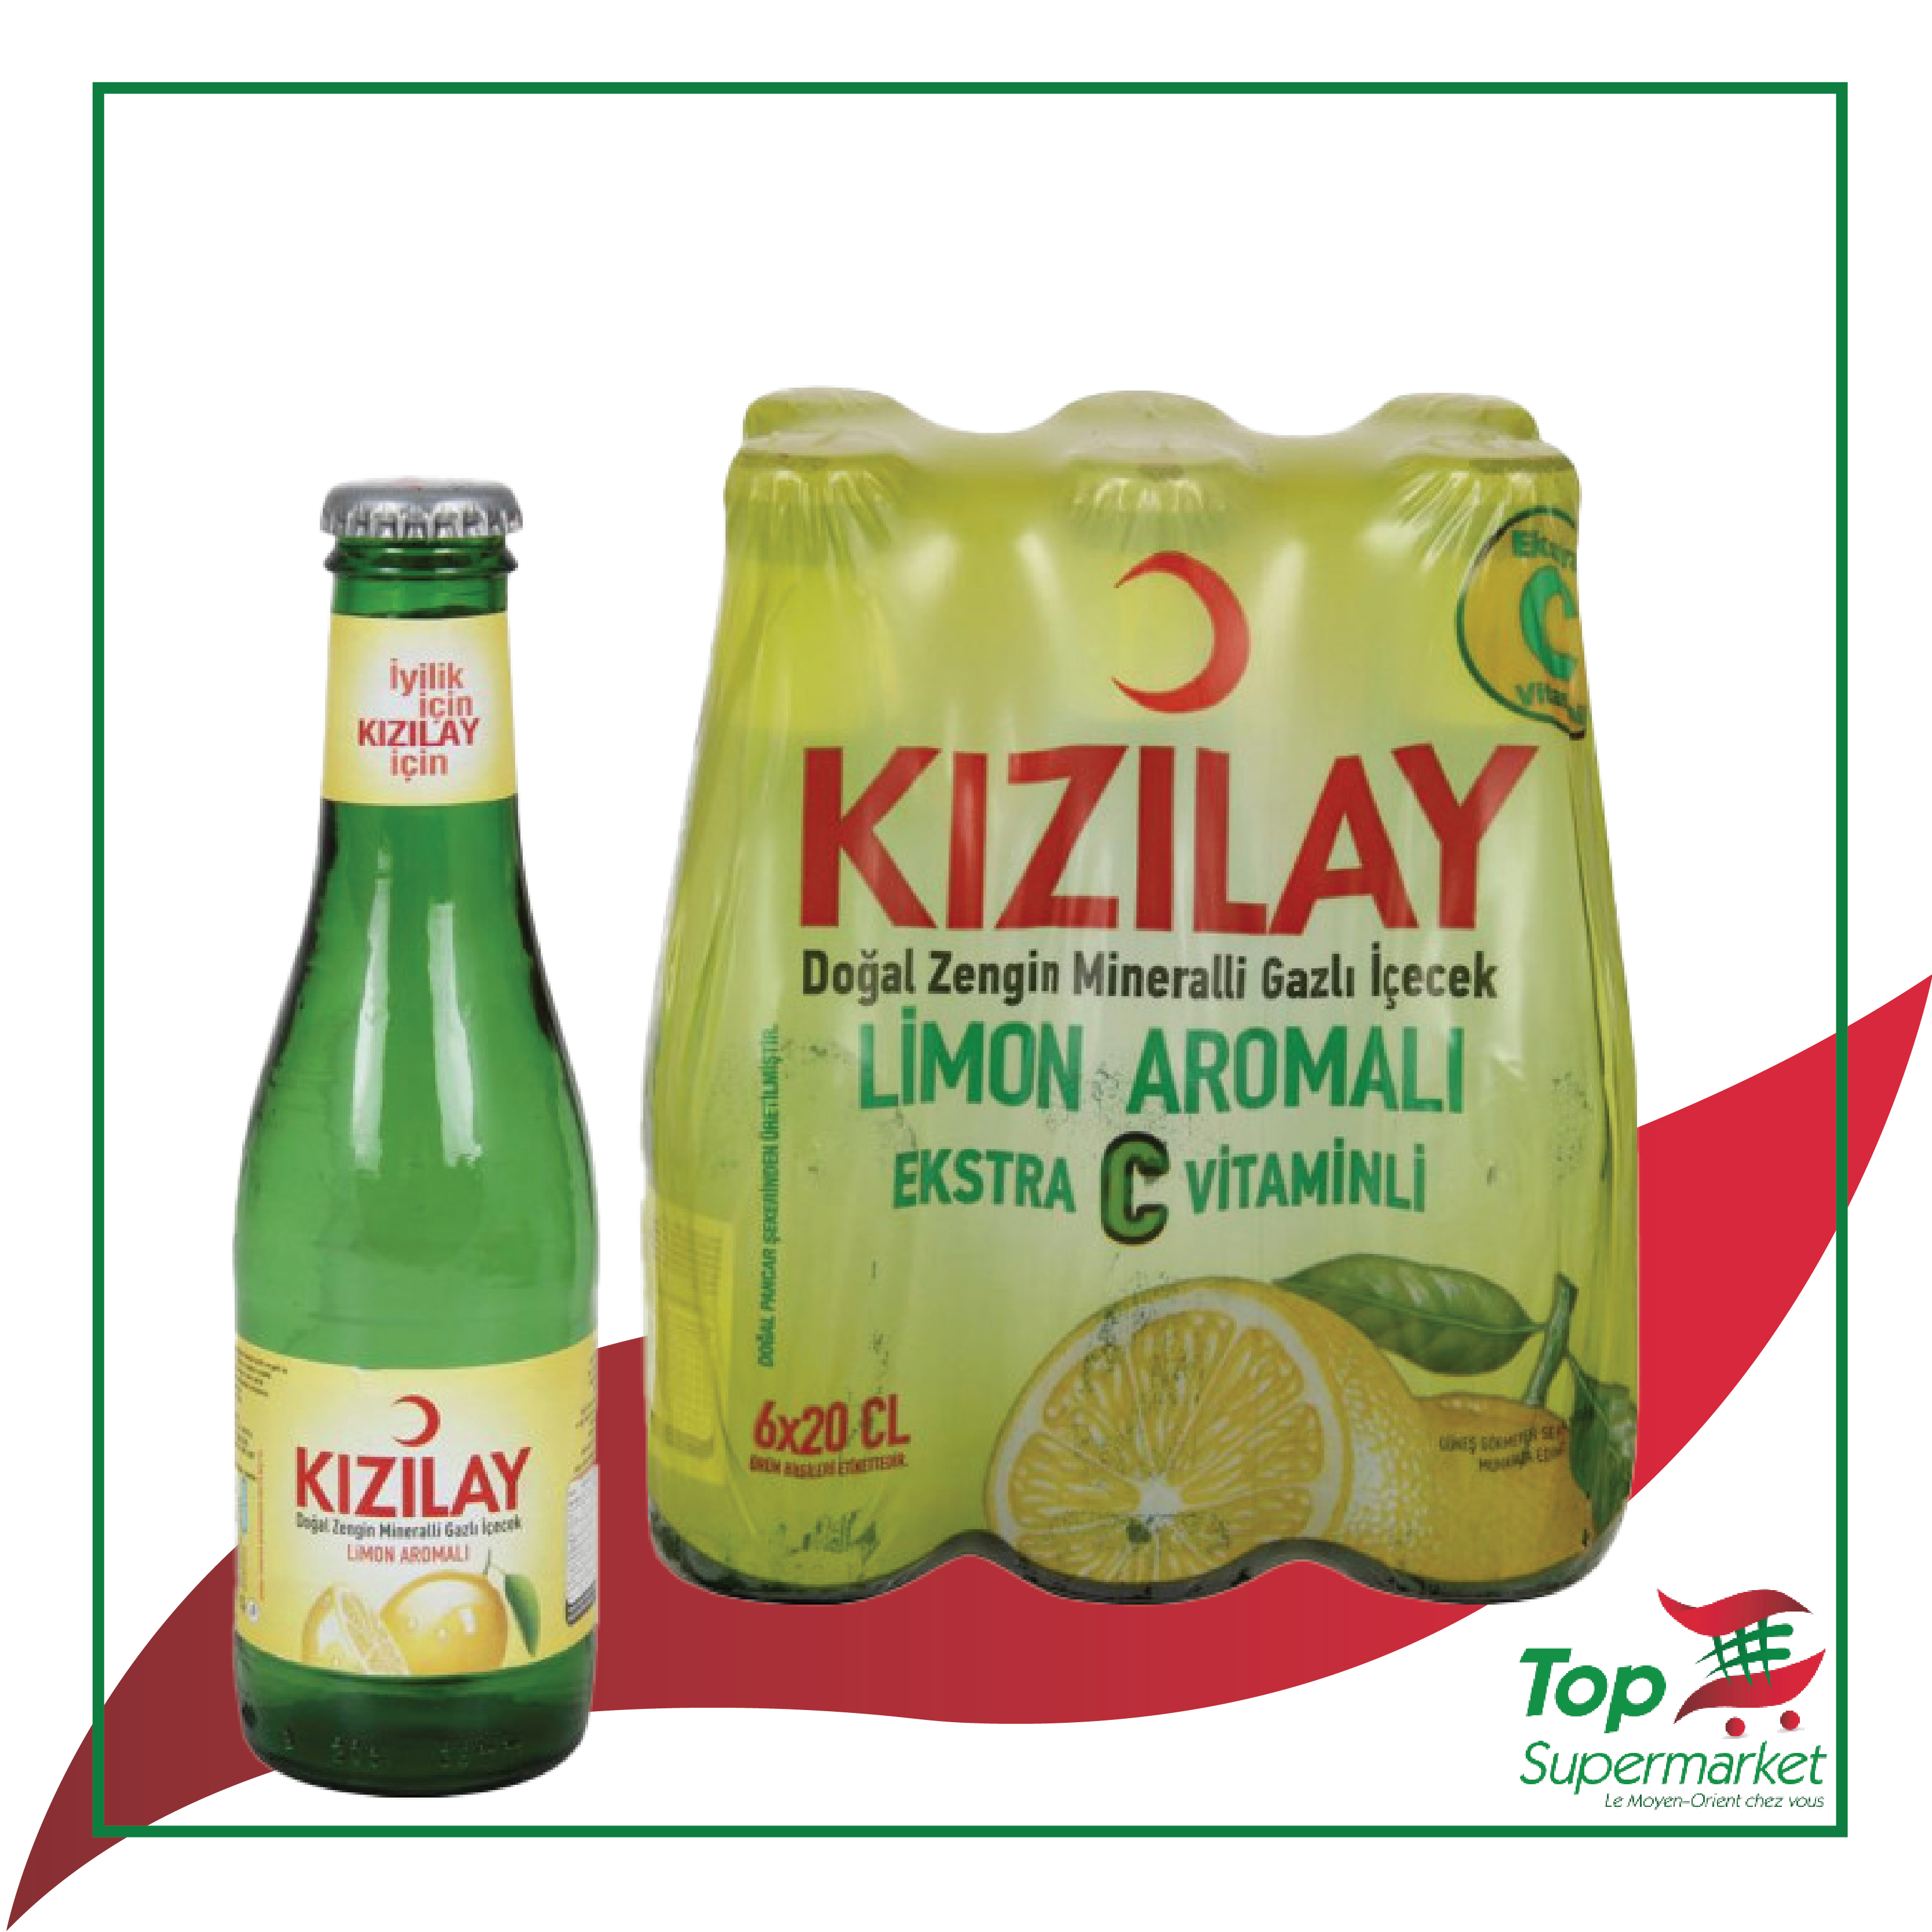 Kizilay lemon extra vitamin C 6x20cl